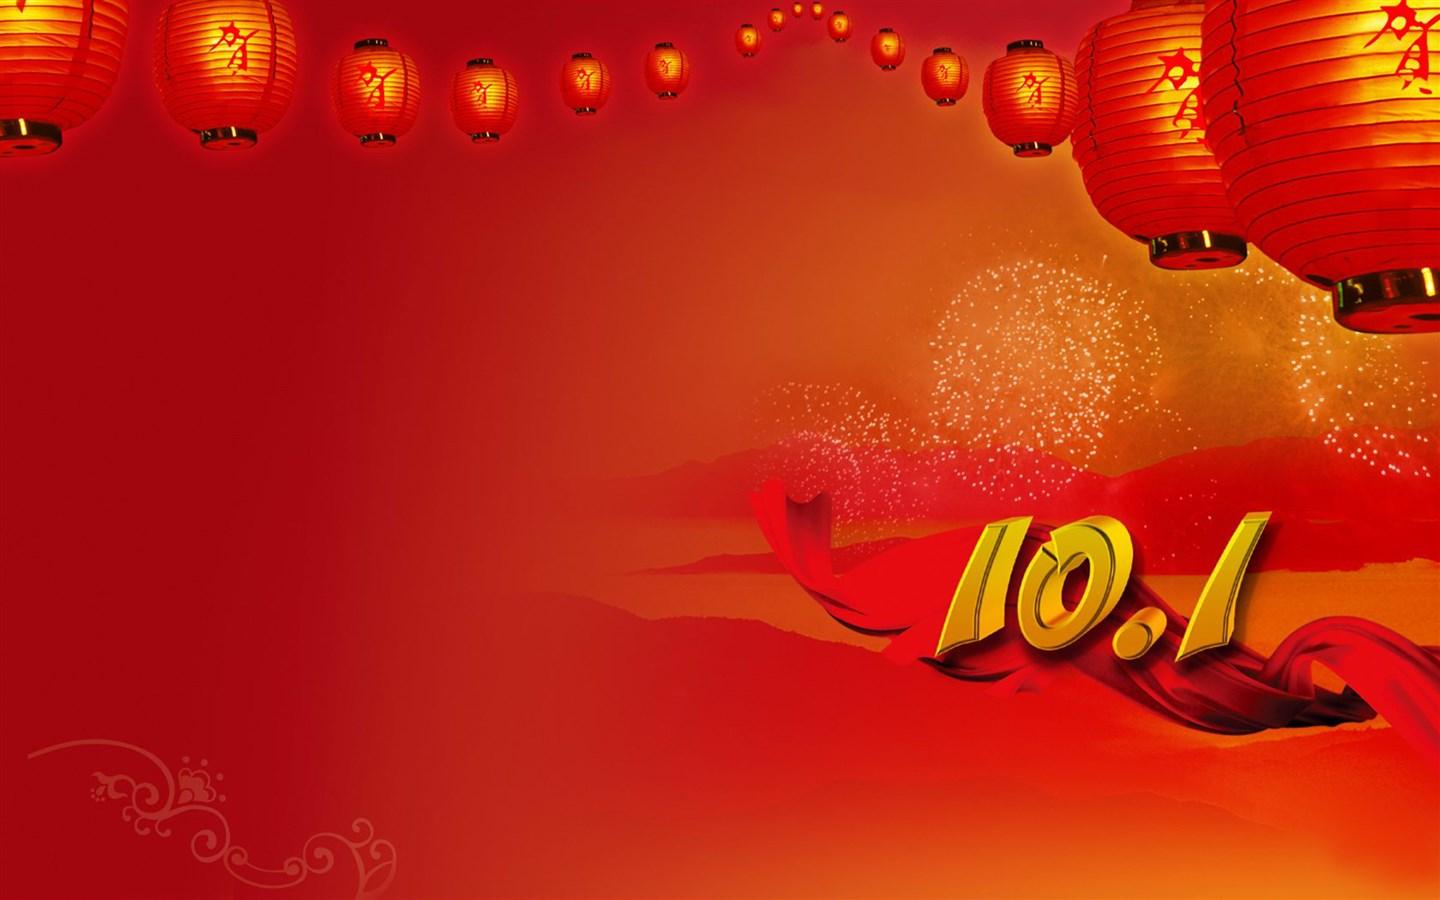 深圳金峰盛祝大家国庆、端午双节快乐